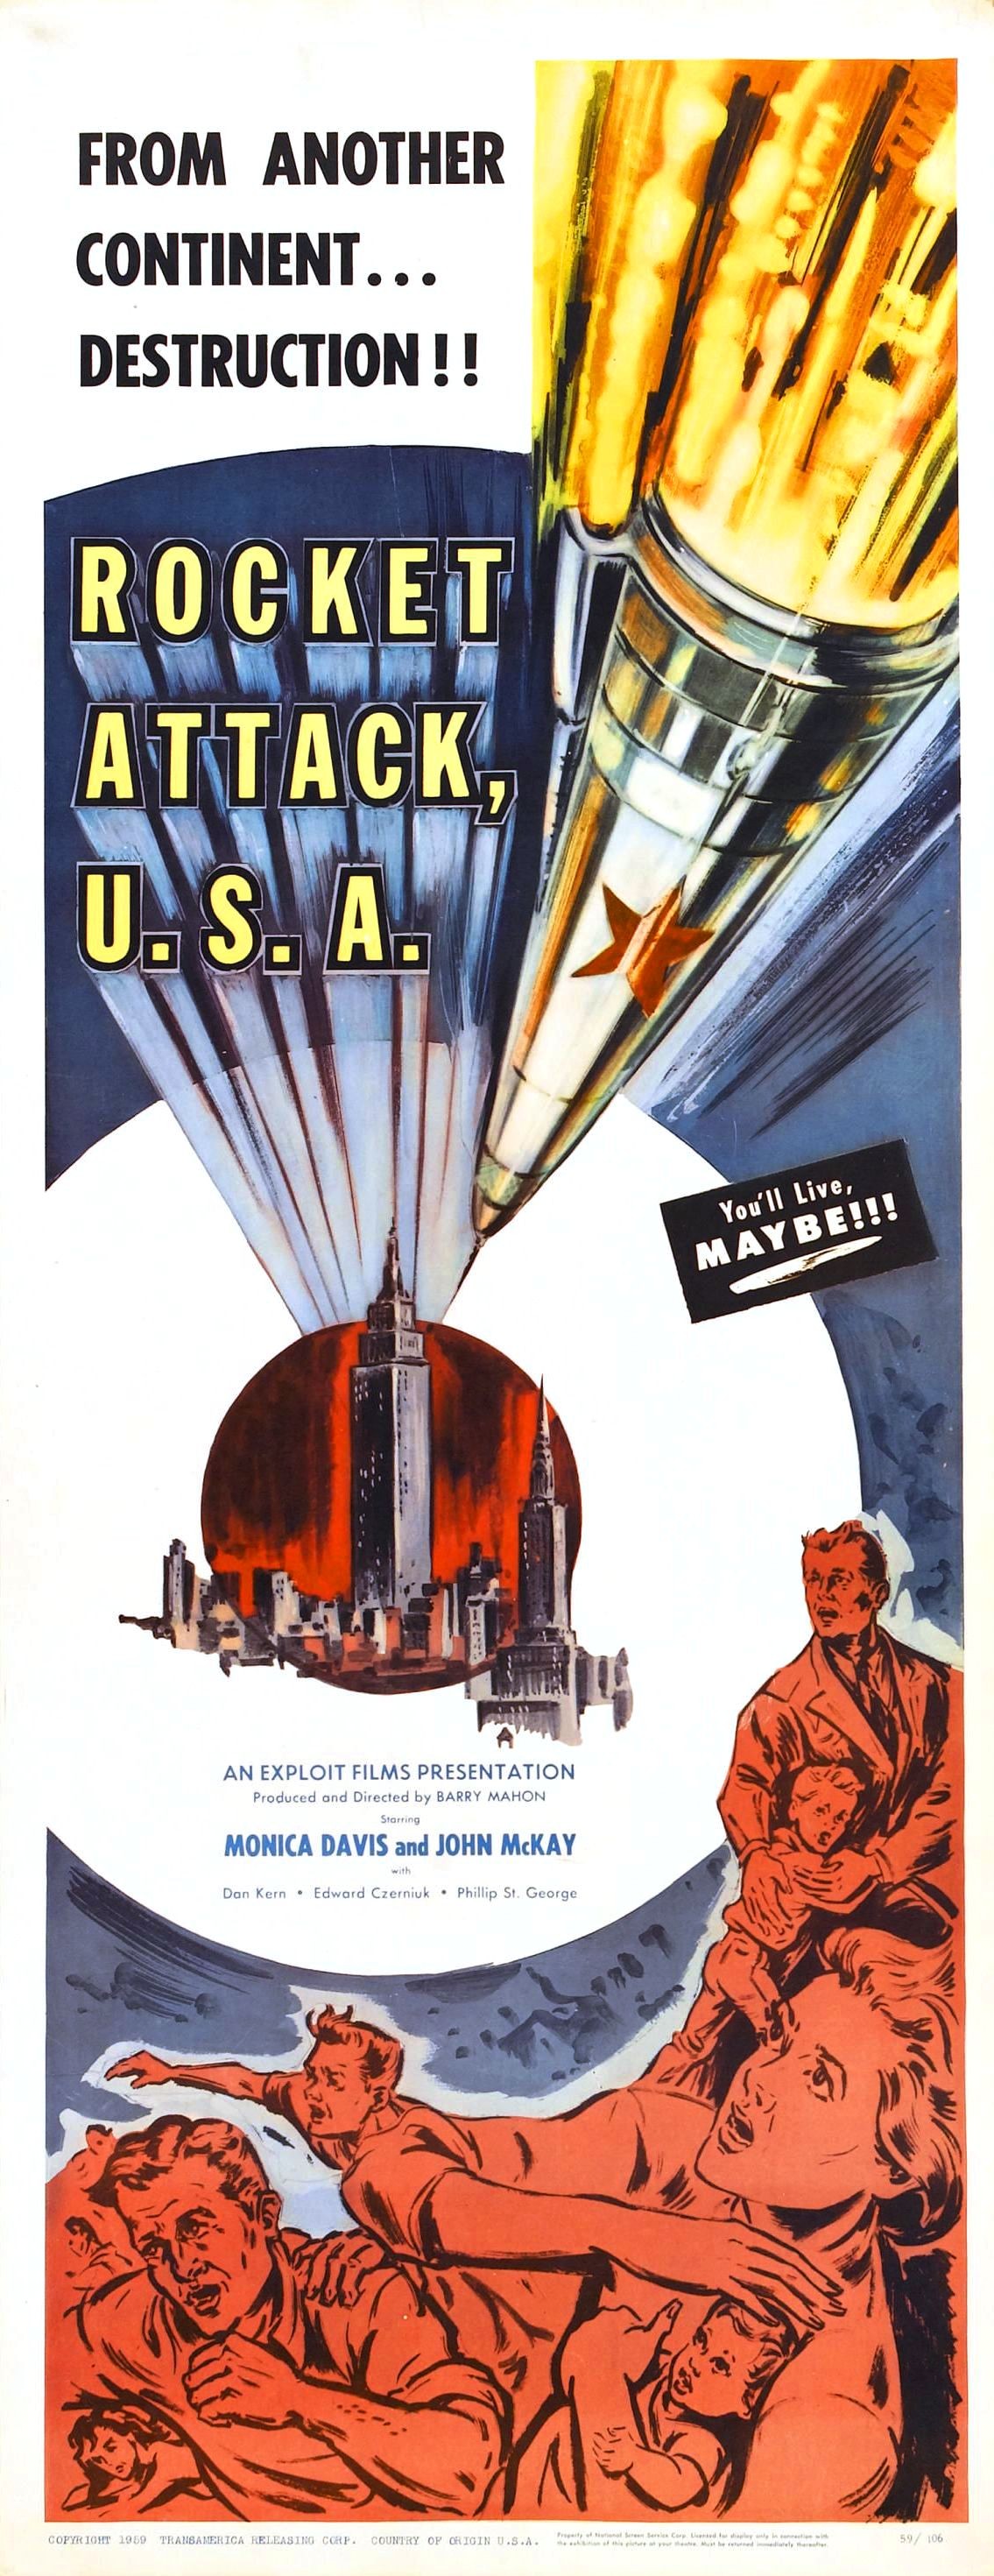 Rocket Attack U.S.A. (1960) Screenshot 2